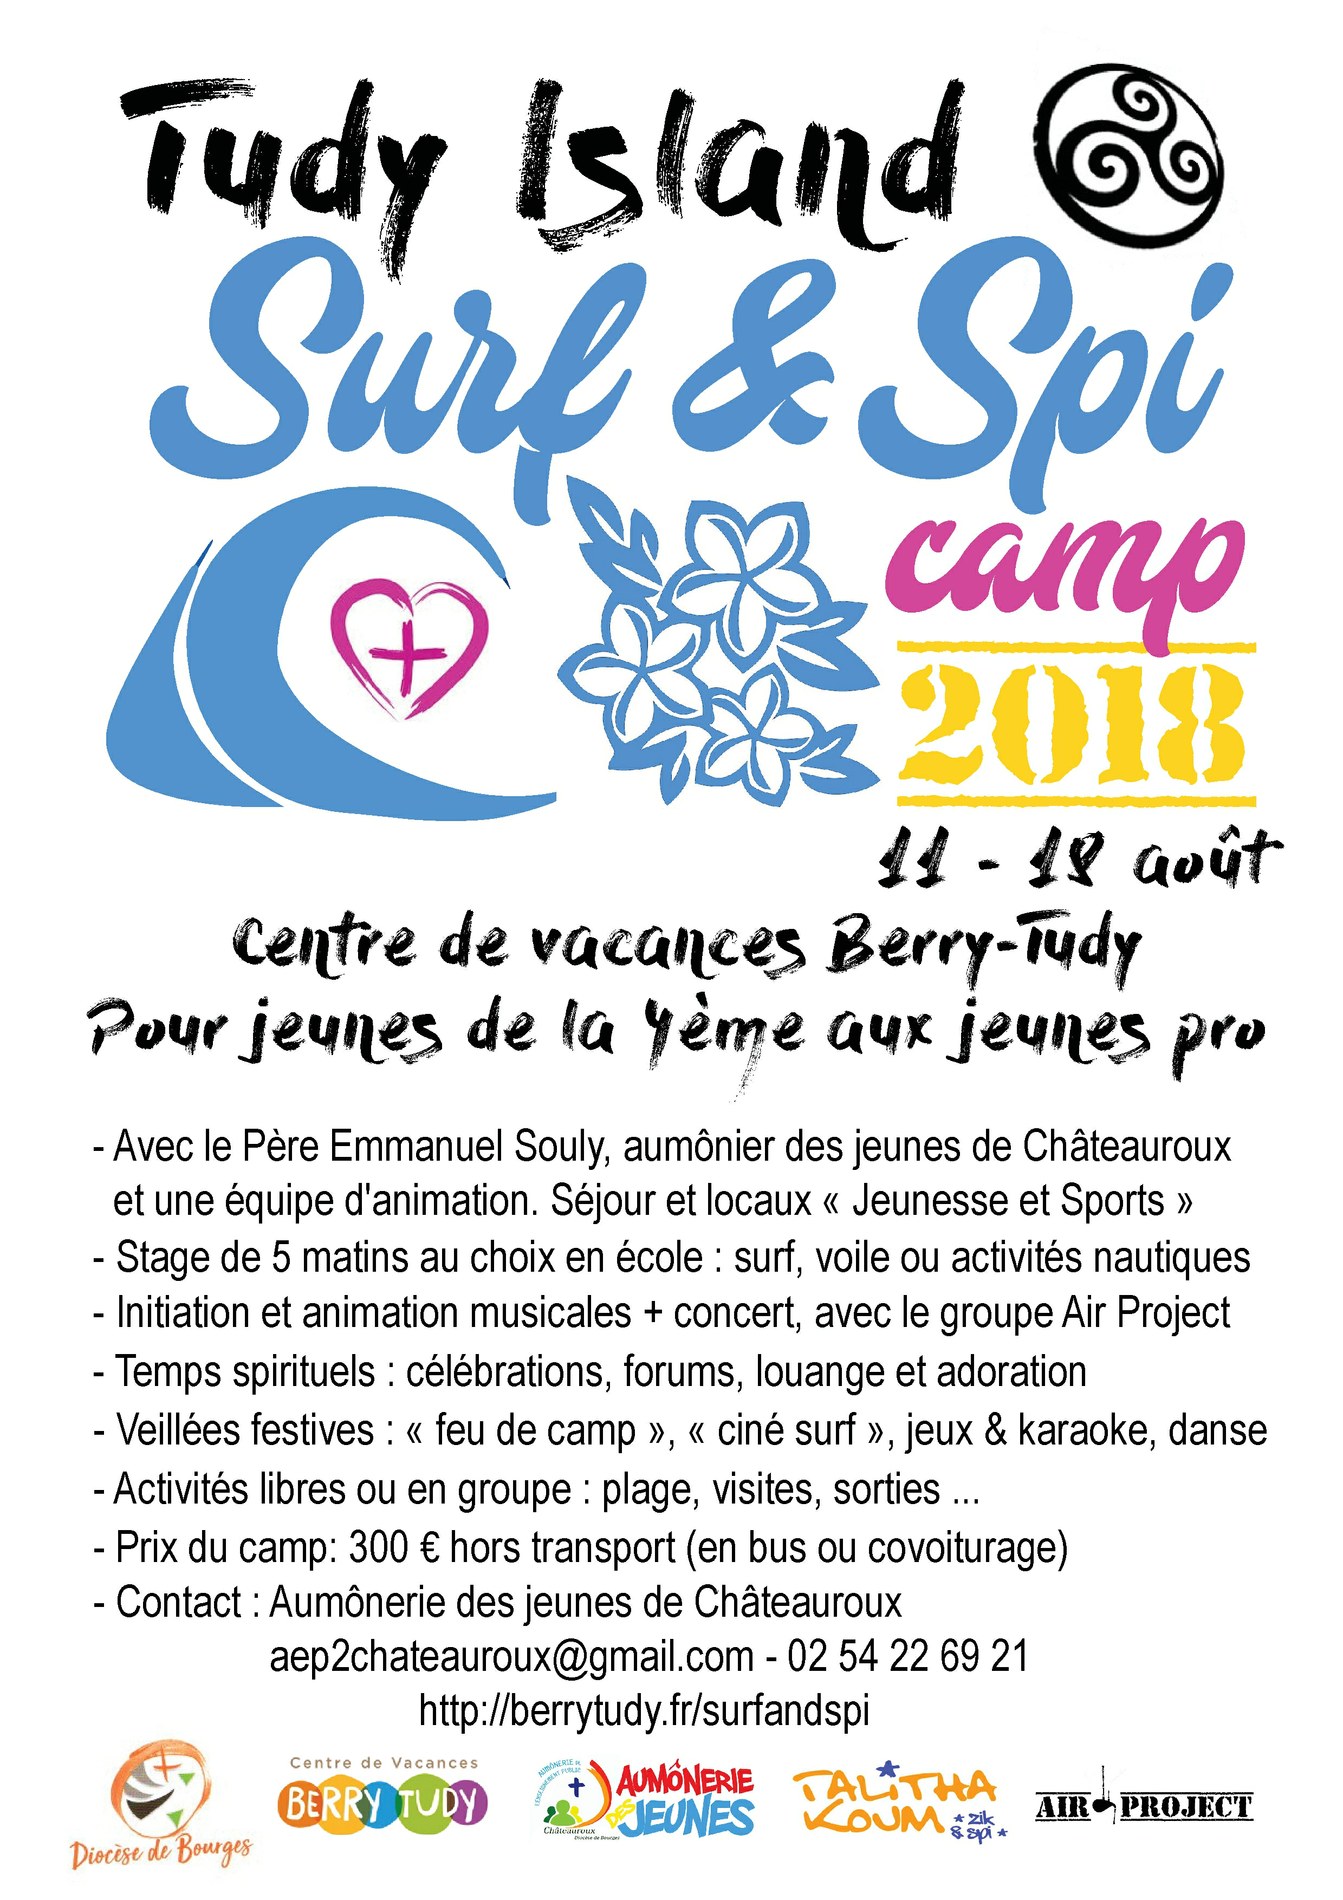 Tudy Island – Surf and Spi – camp de vacances du 11 au 18 août 2018 à l’Île-Tudy (29)